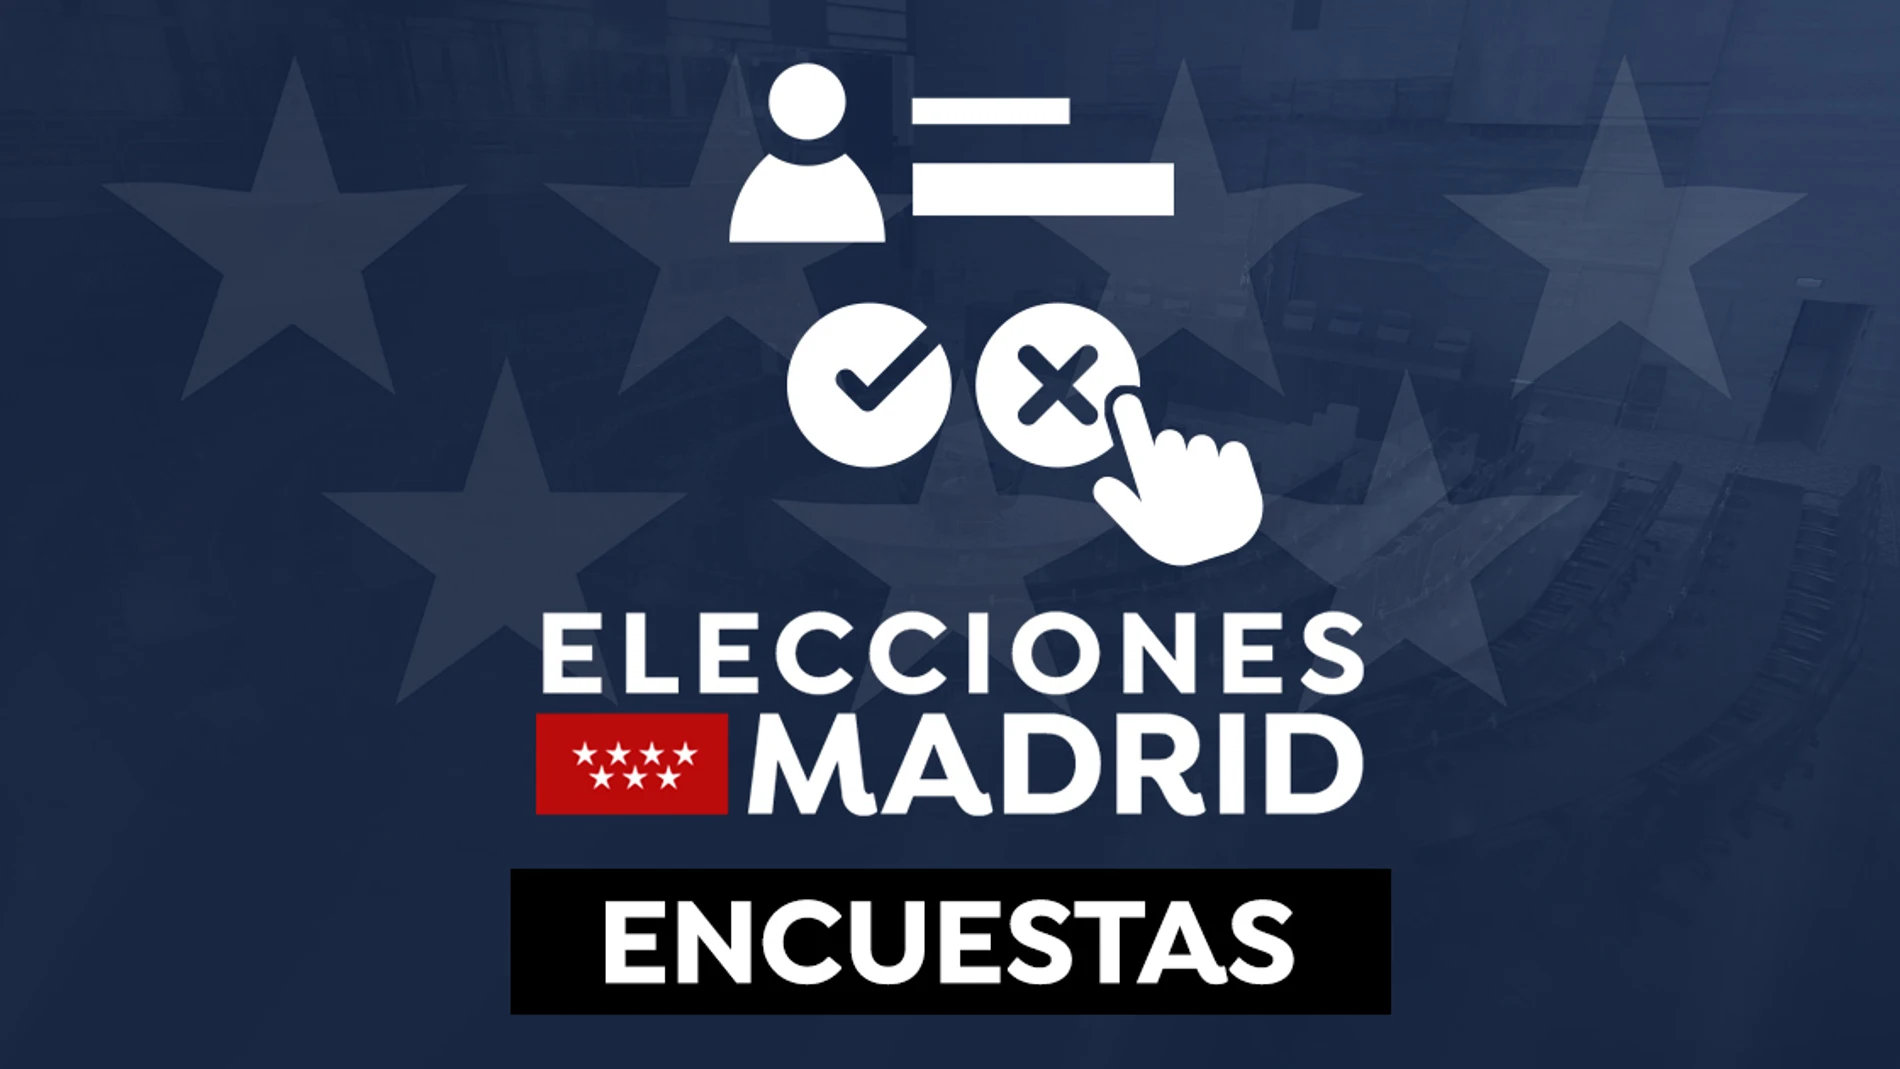 Este es el resultado de las elecciones de Madrid según el sondeo a pie de urna de Gad3